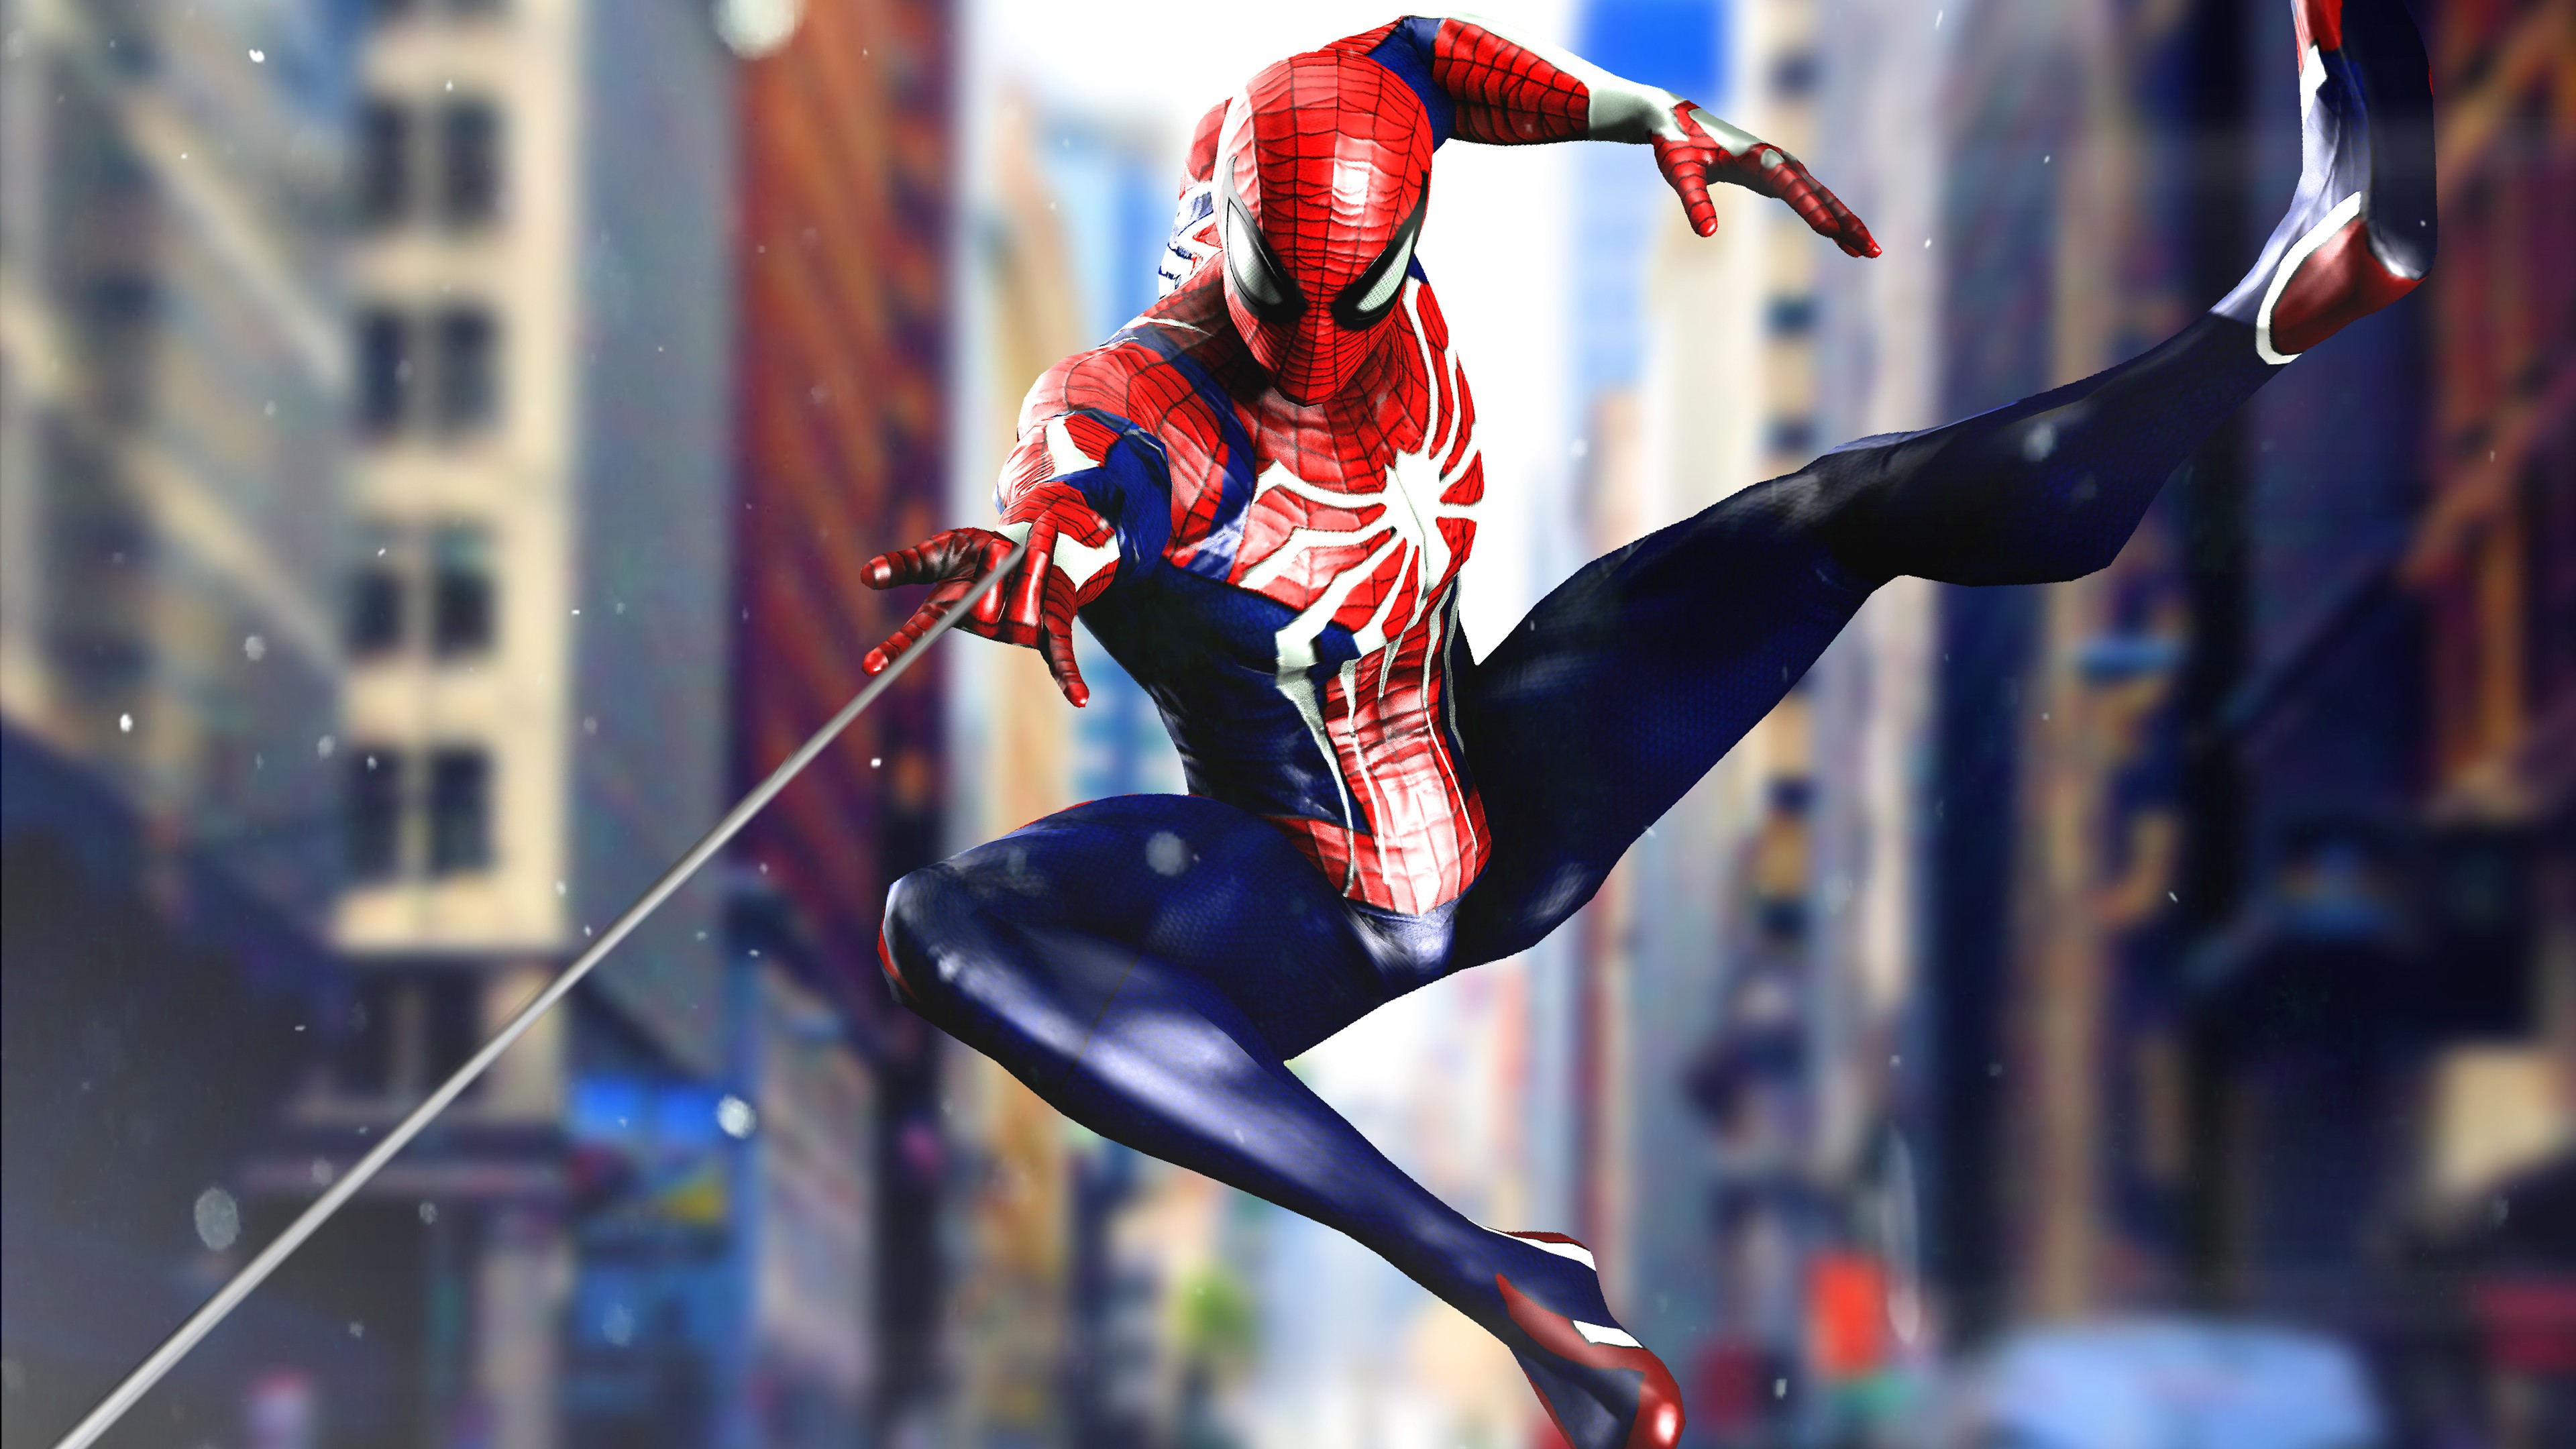 4K wallpaper: Spider Man 3 Ps4 Wallpaper